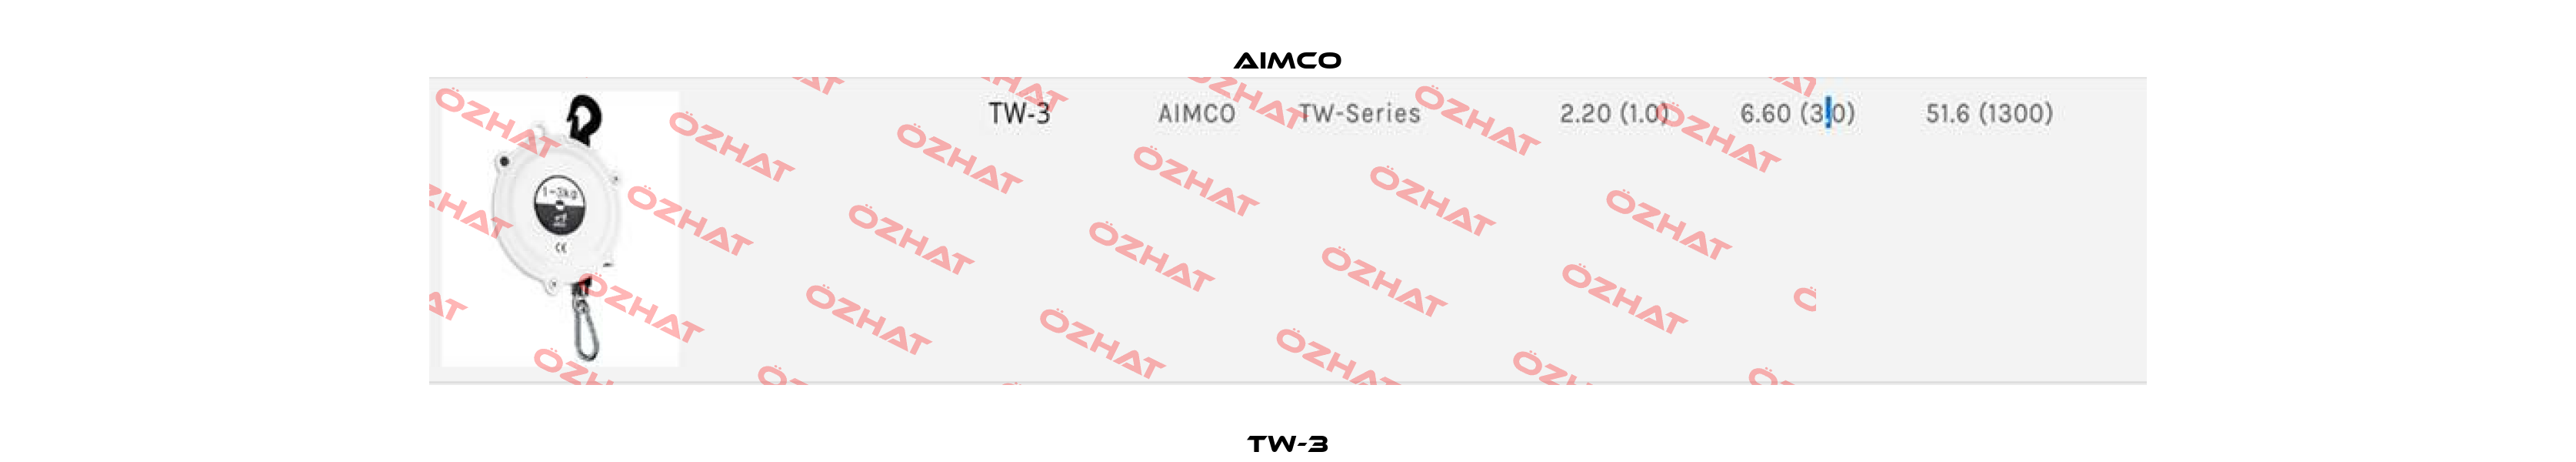 TW-3 AIMCO